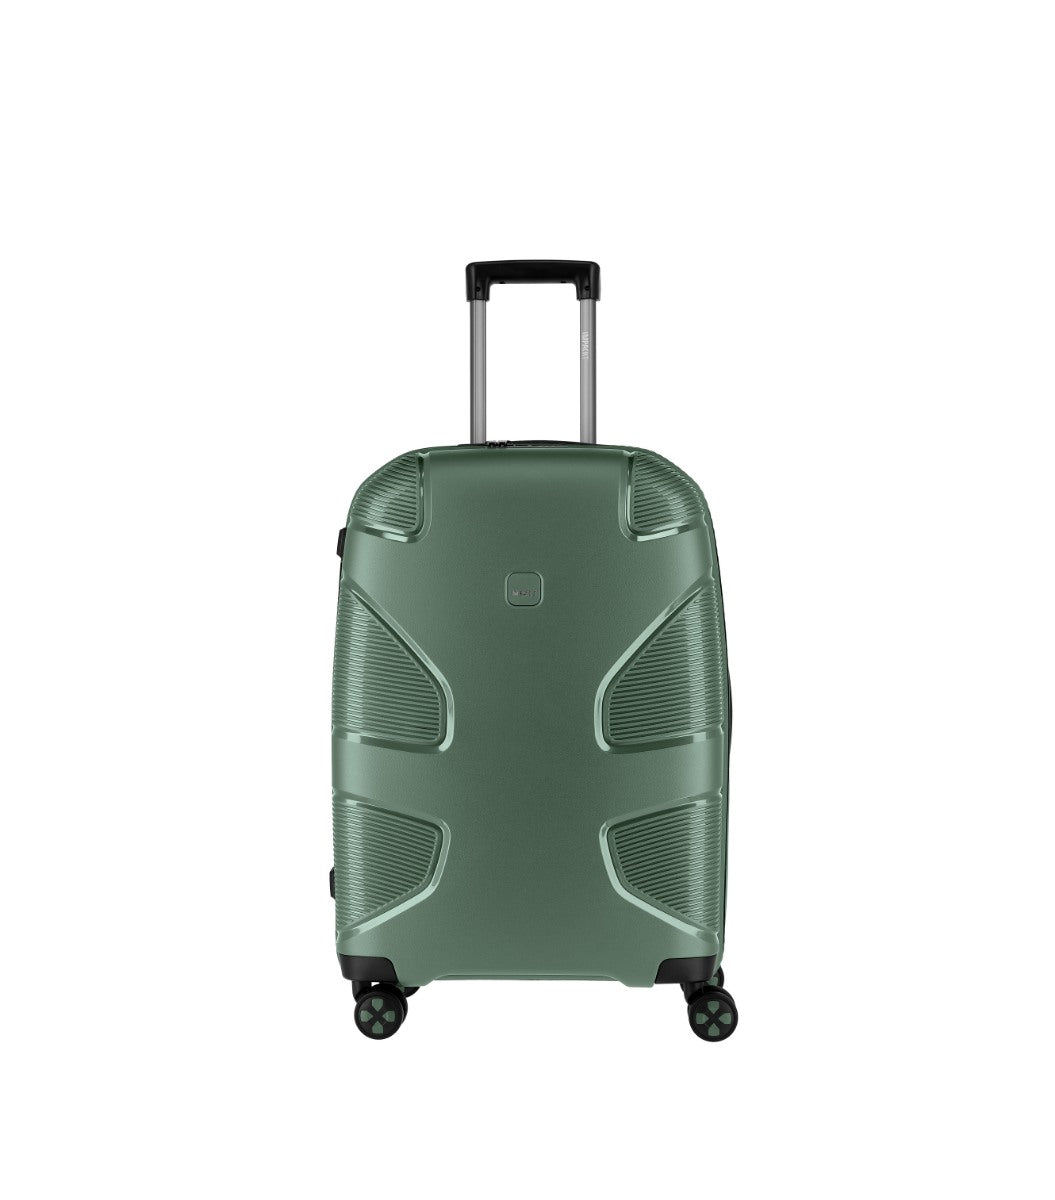 Impackt IP1 Grøn Kuffert - Mellen - 67 cm